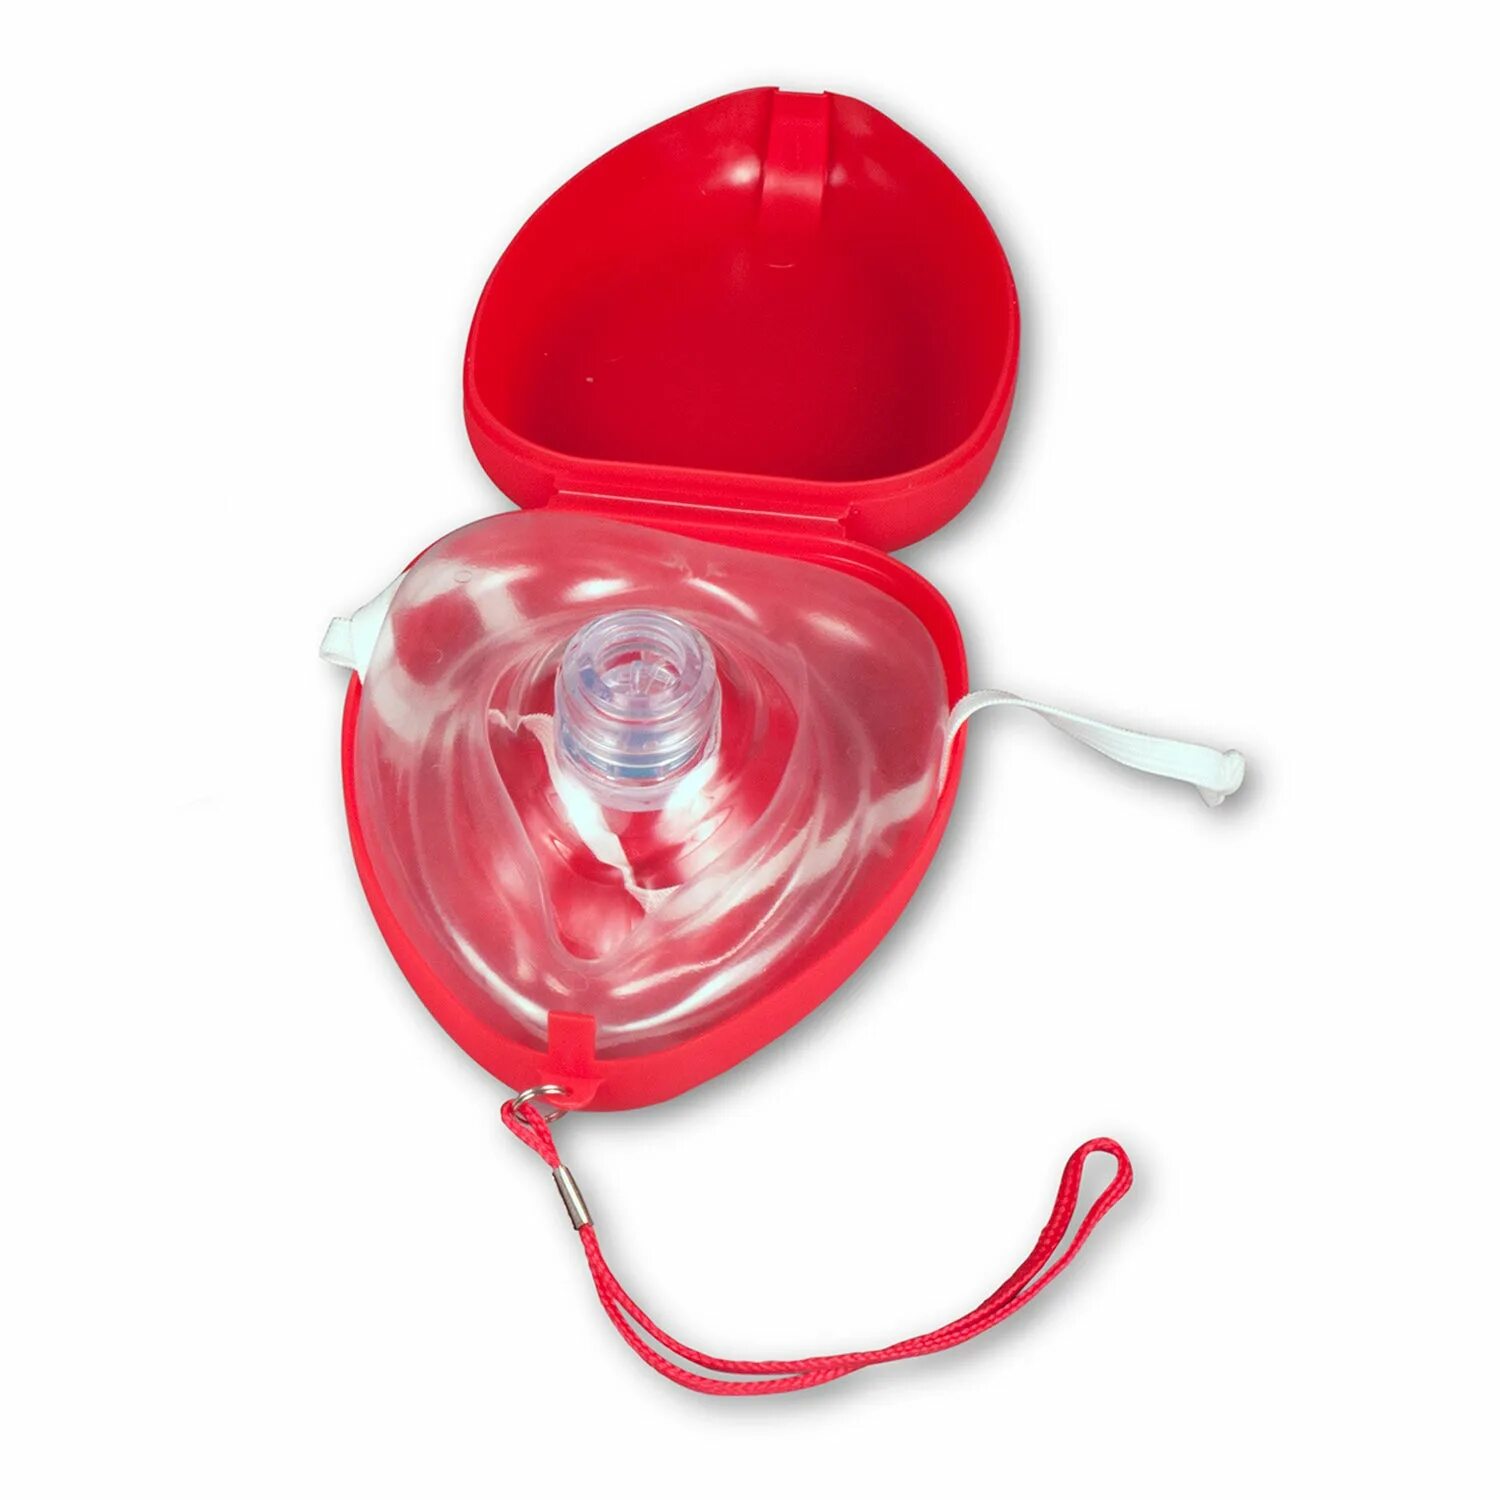 Маска для слр. Карманная маска для ИВЛ "рот-маска" Laerdal. Маска для искусственного дыхания ADSAFE CPR Pocket. Маска реанимационная для СЛР. Карманная маска для реанимации с клапаном.